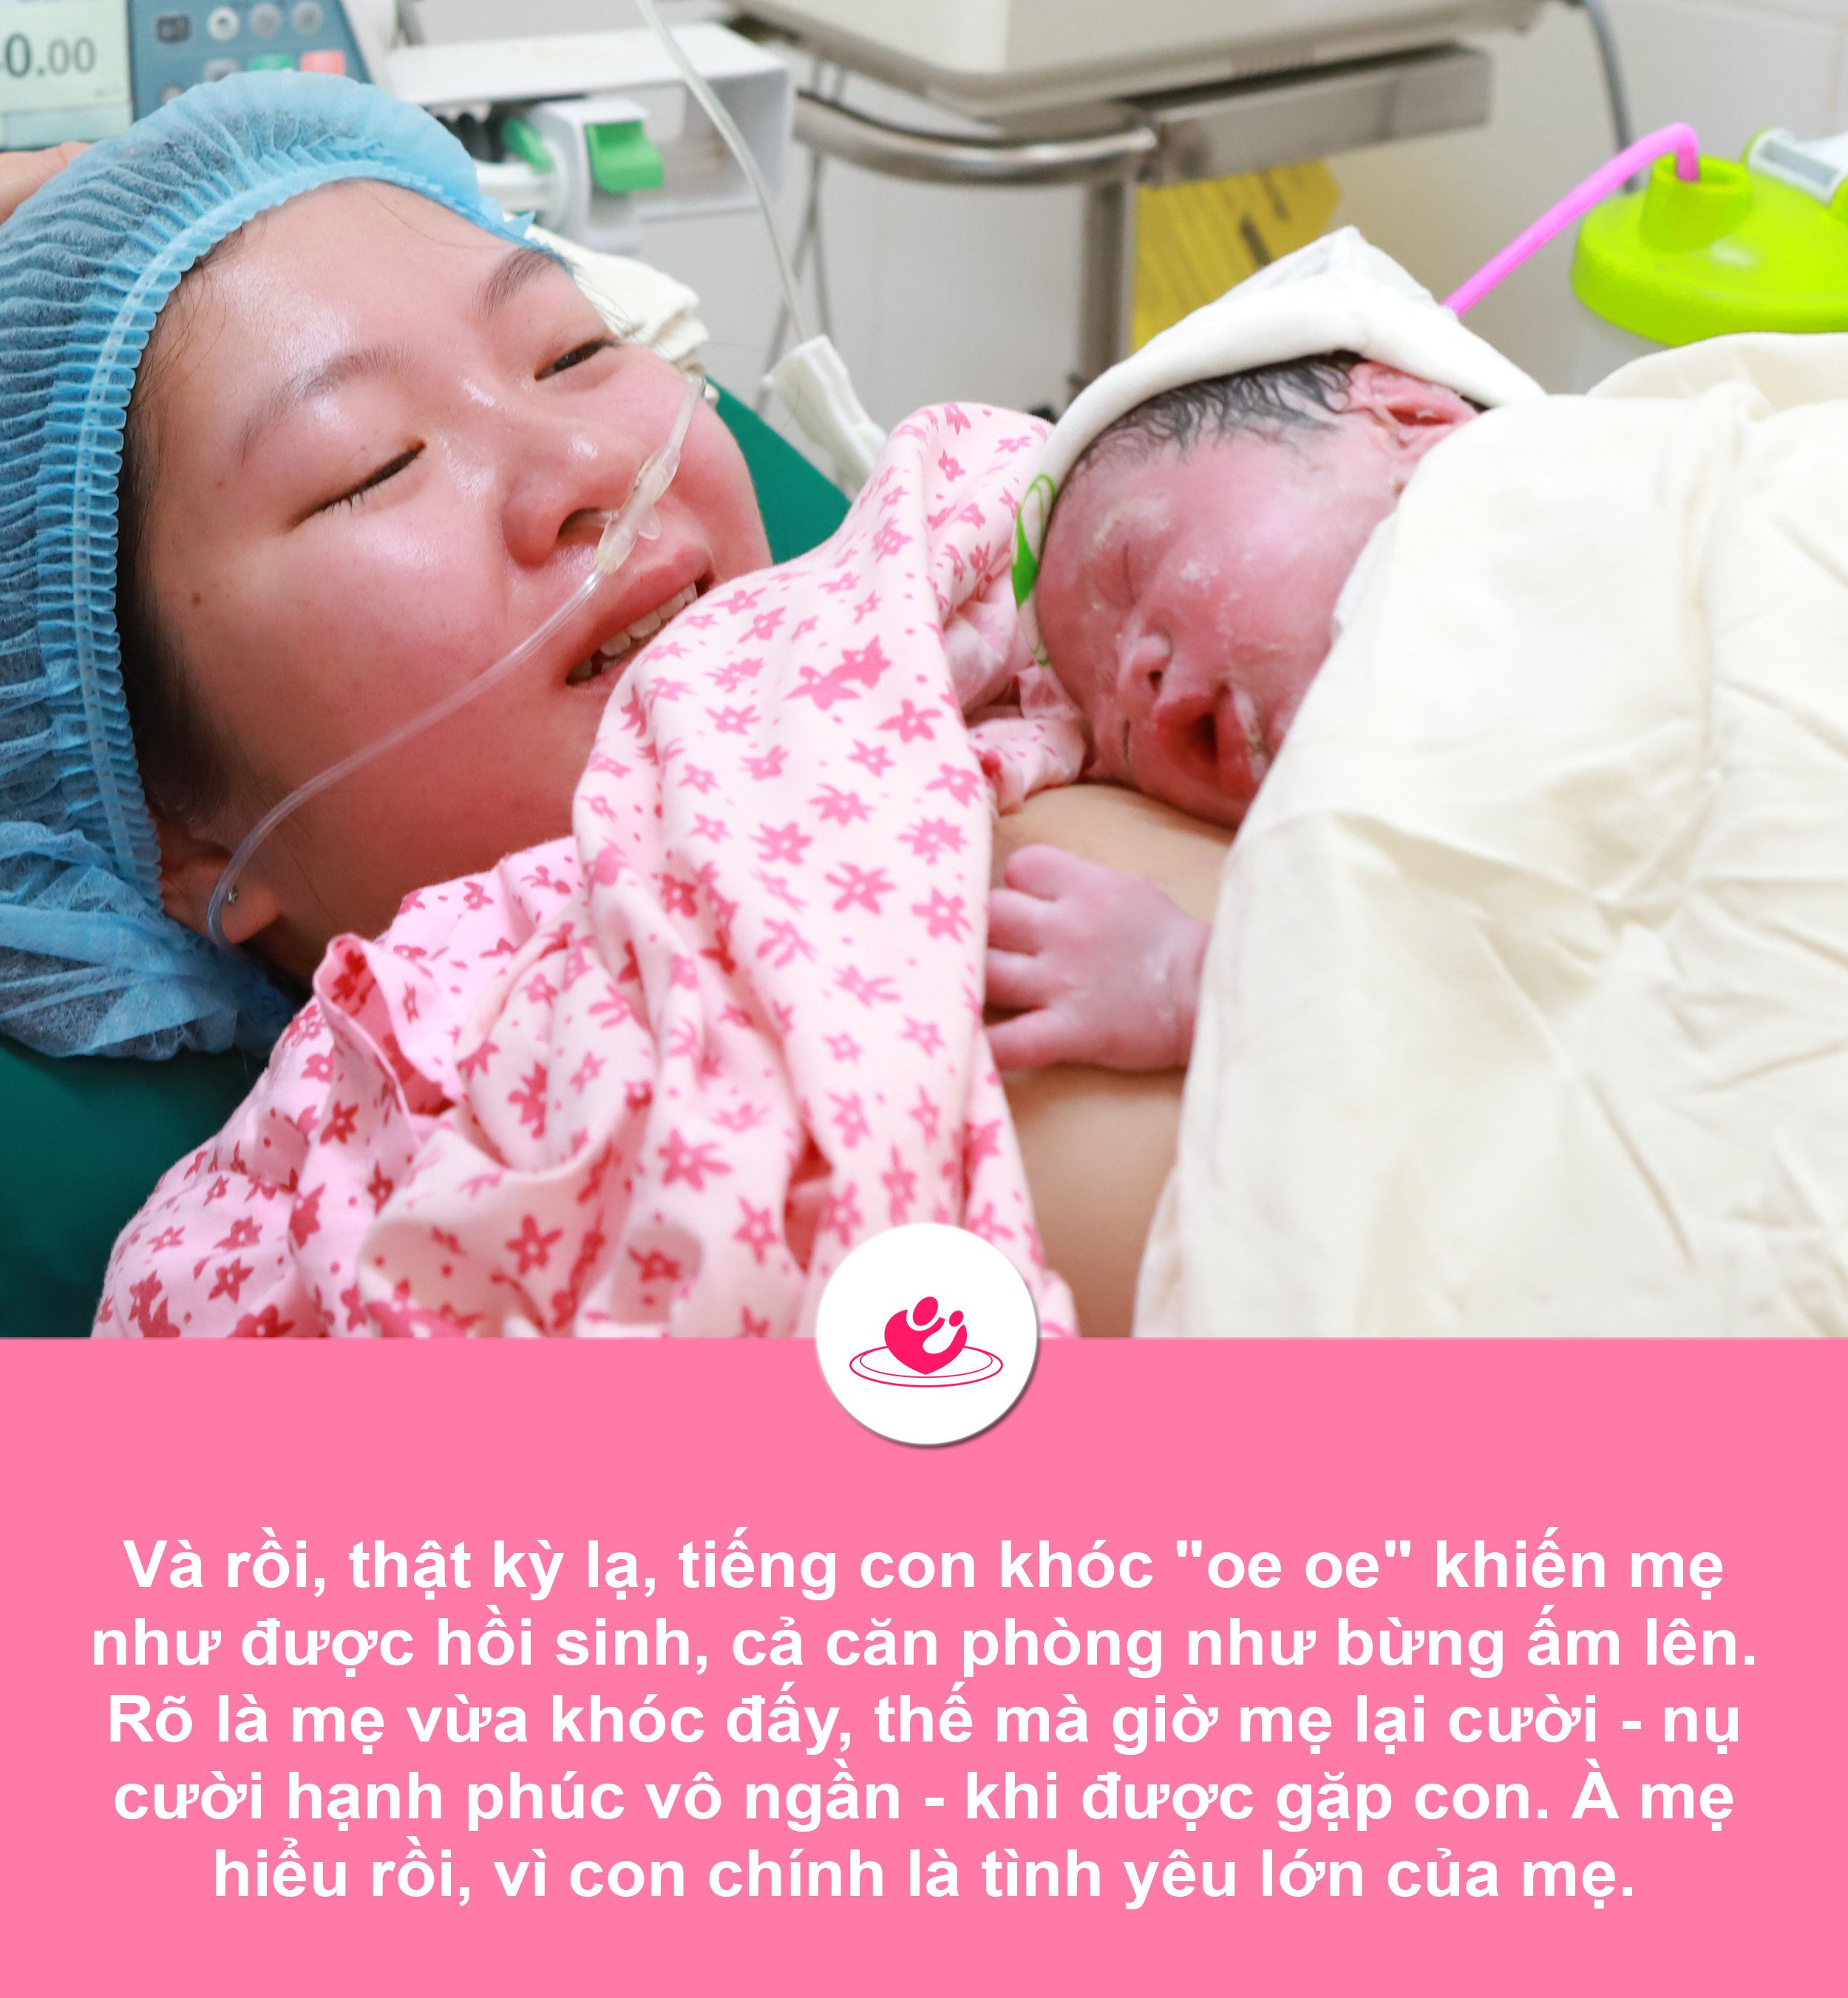 Những khoảnh khắc không thể quên của người mẹ khi sinh con ở Bệnh viện Phụ sản Hà Nội 7